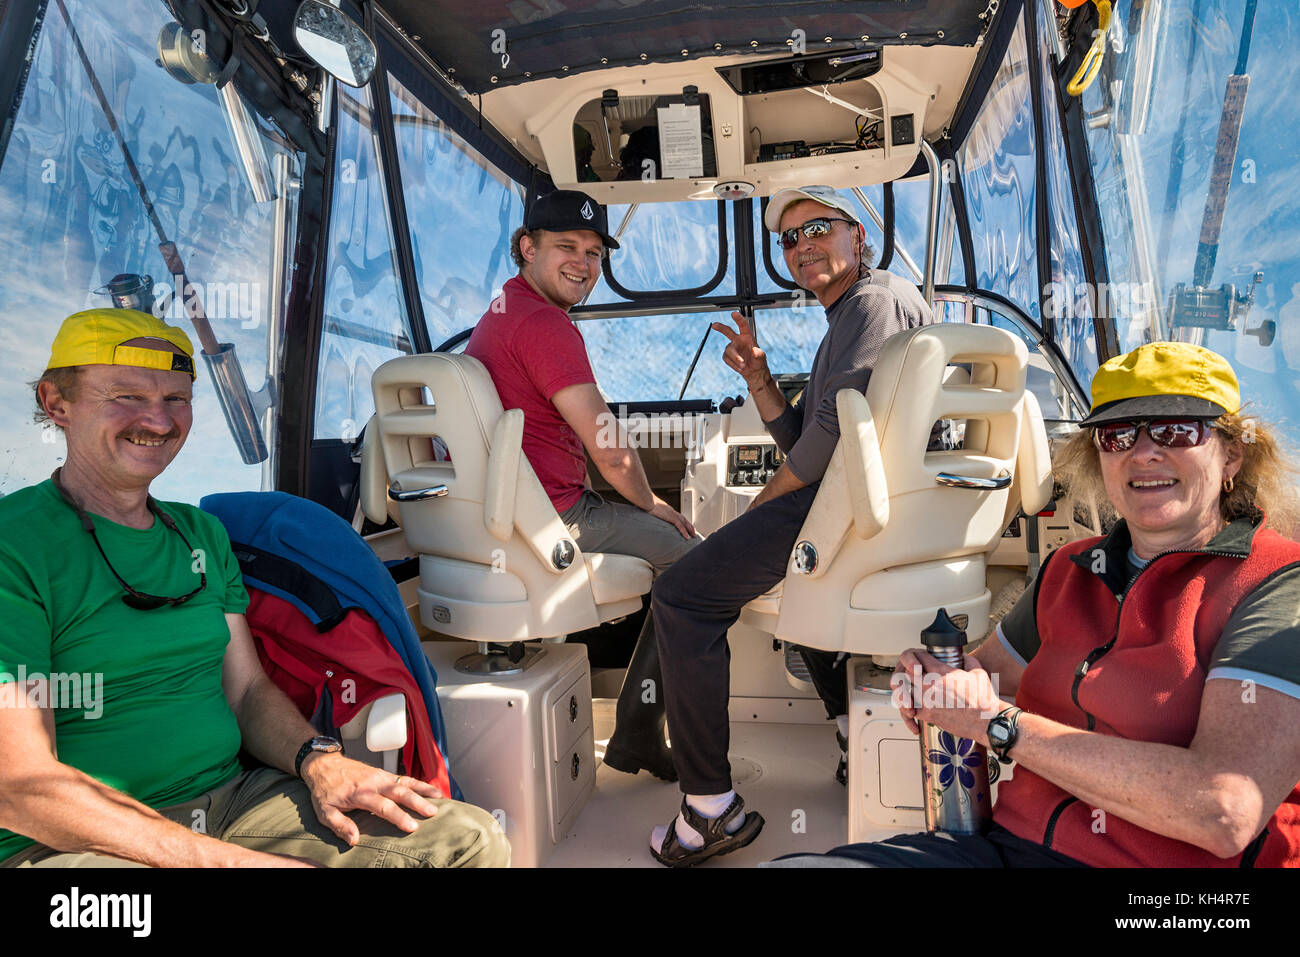 Quatre personnes assises en hors-bord, revenant d'un voyage de pêche, souriant, regardant la caméra, région de l'île de Vancouver, Colombie-Britannique, Canada Banque D'Images